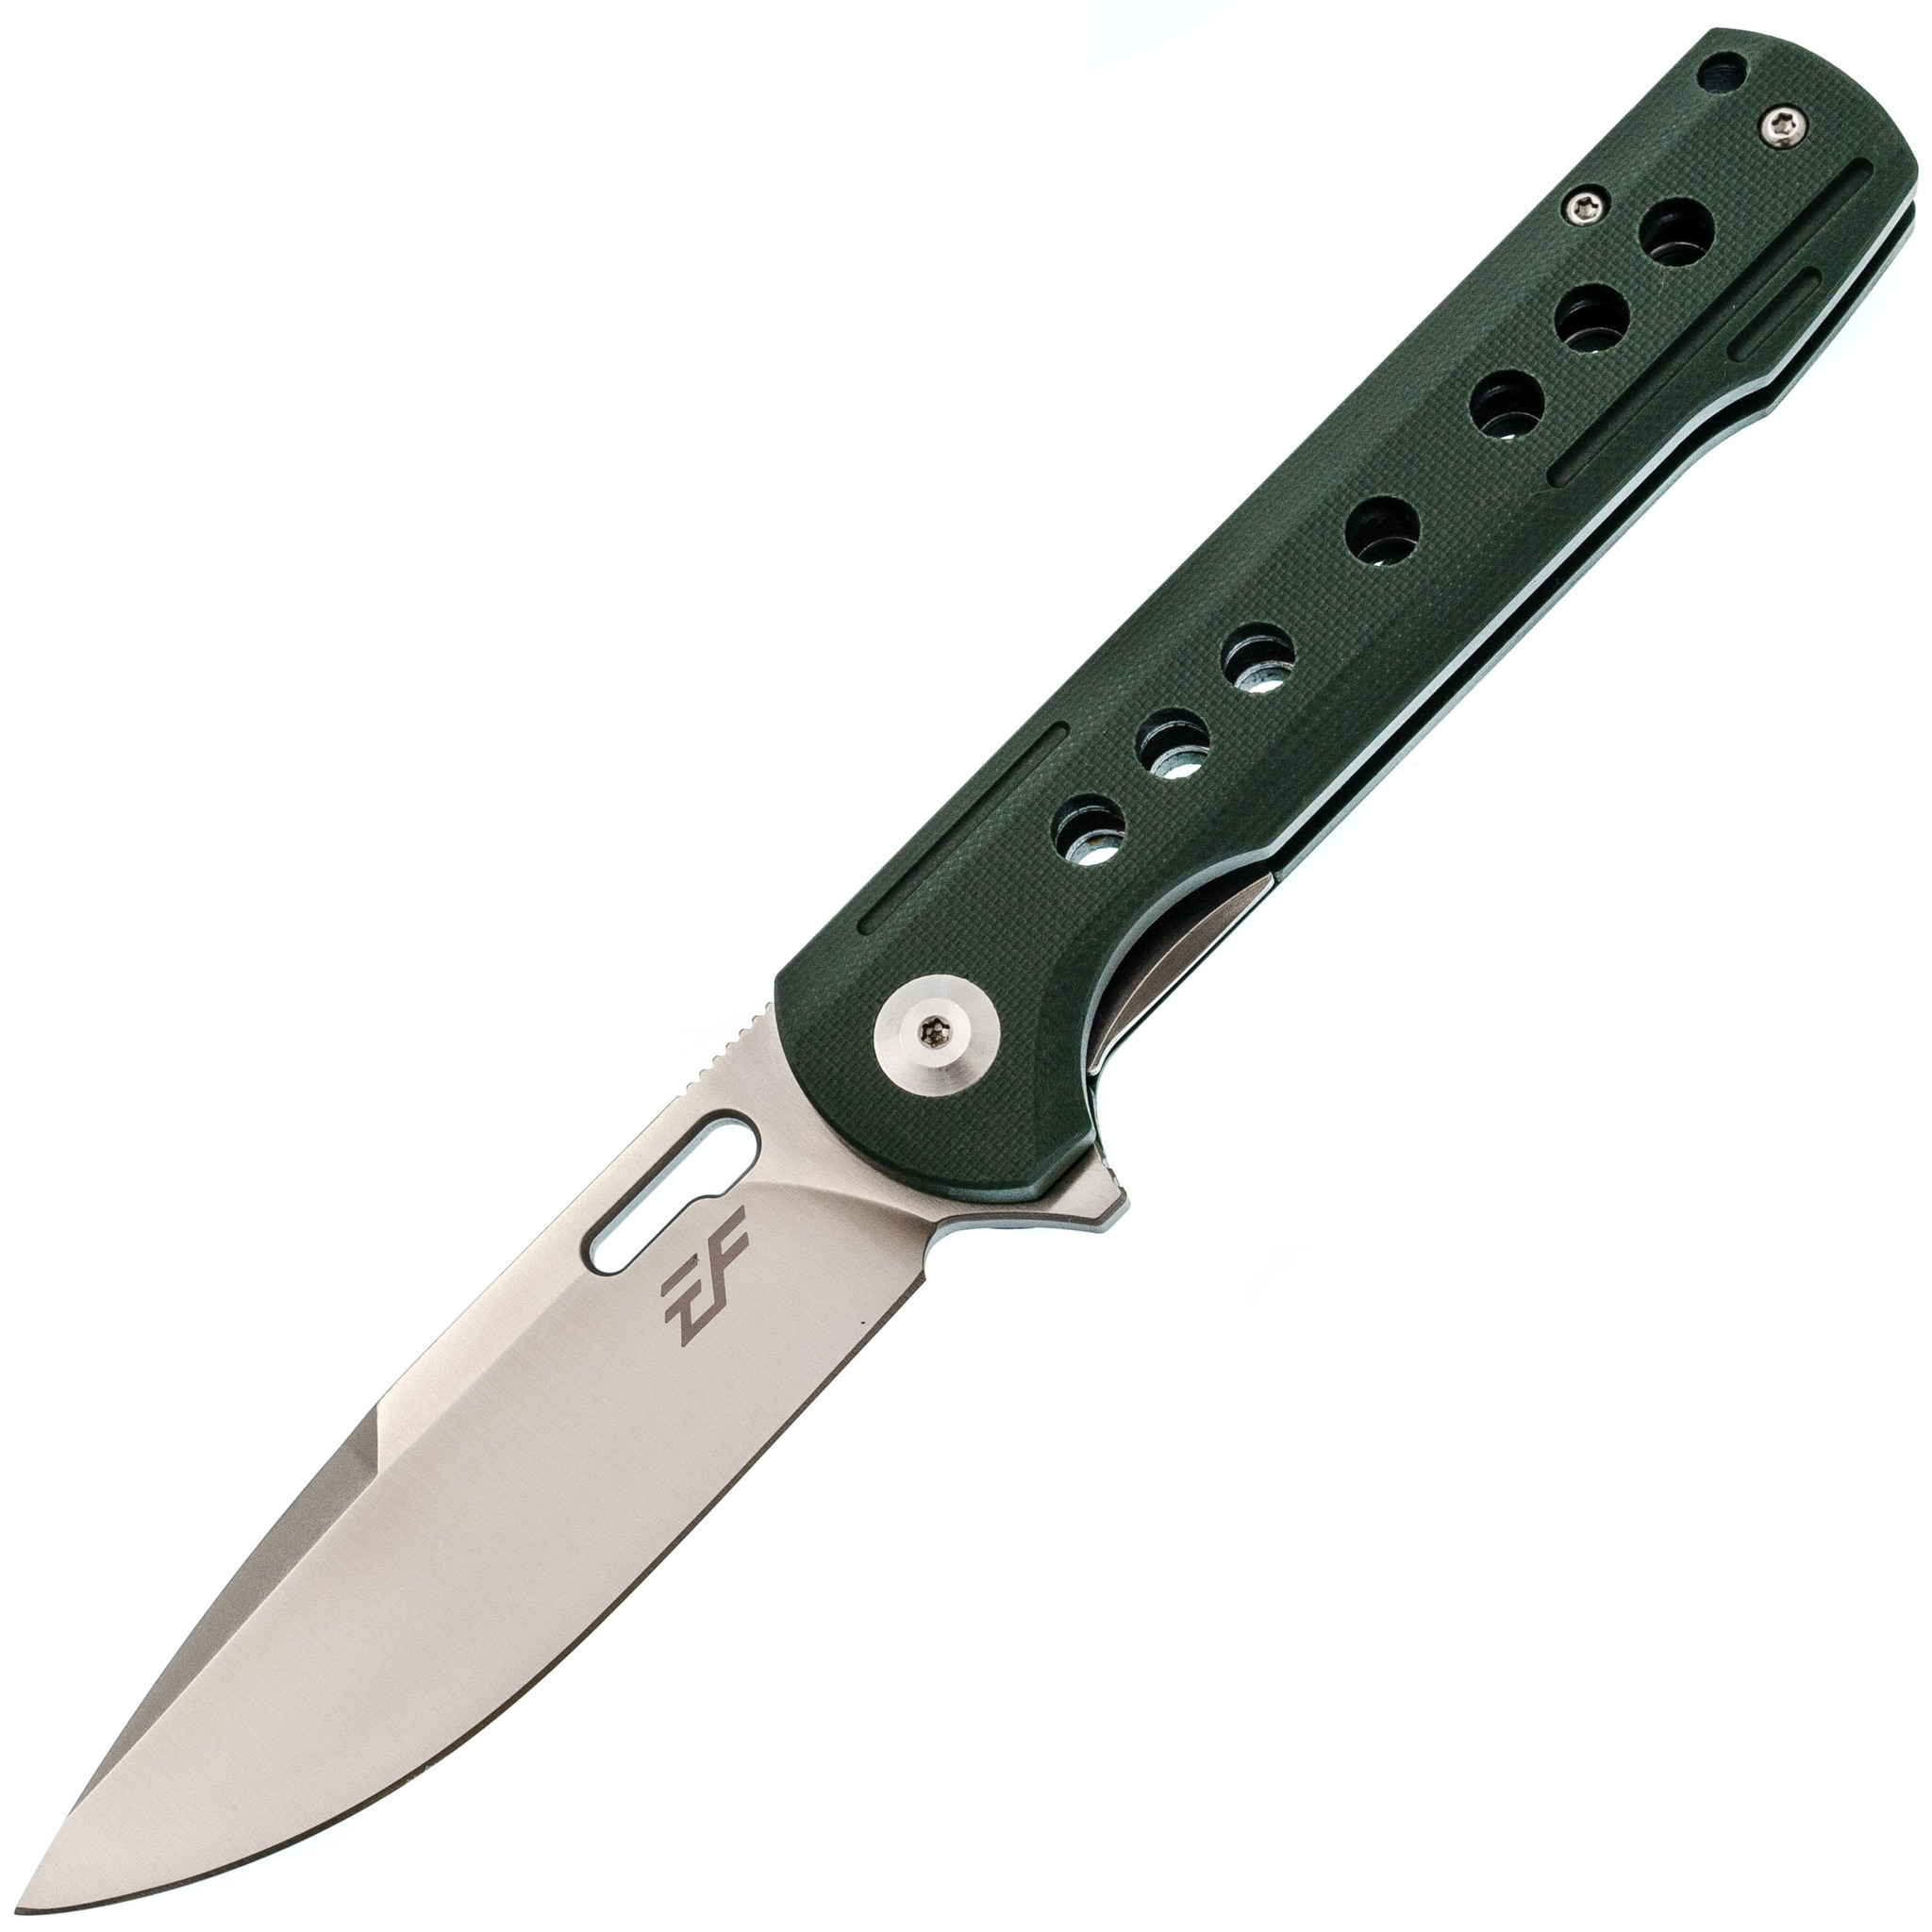 Складной нож Eafengrow EF910 Green, сталь D2, рукоять G10, Бренды, Eafengrow